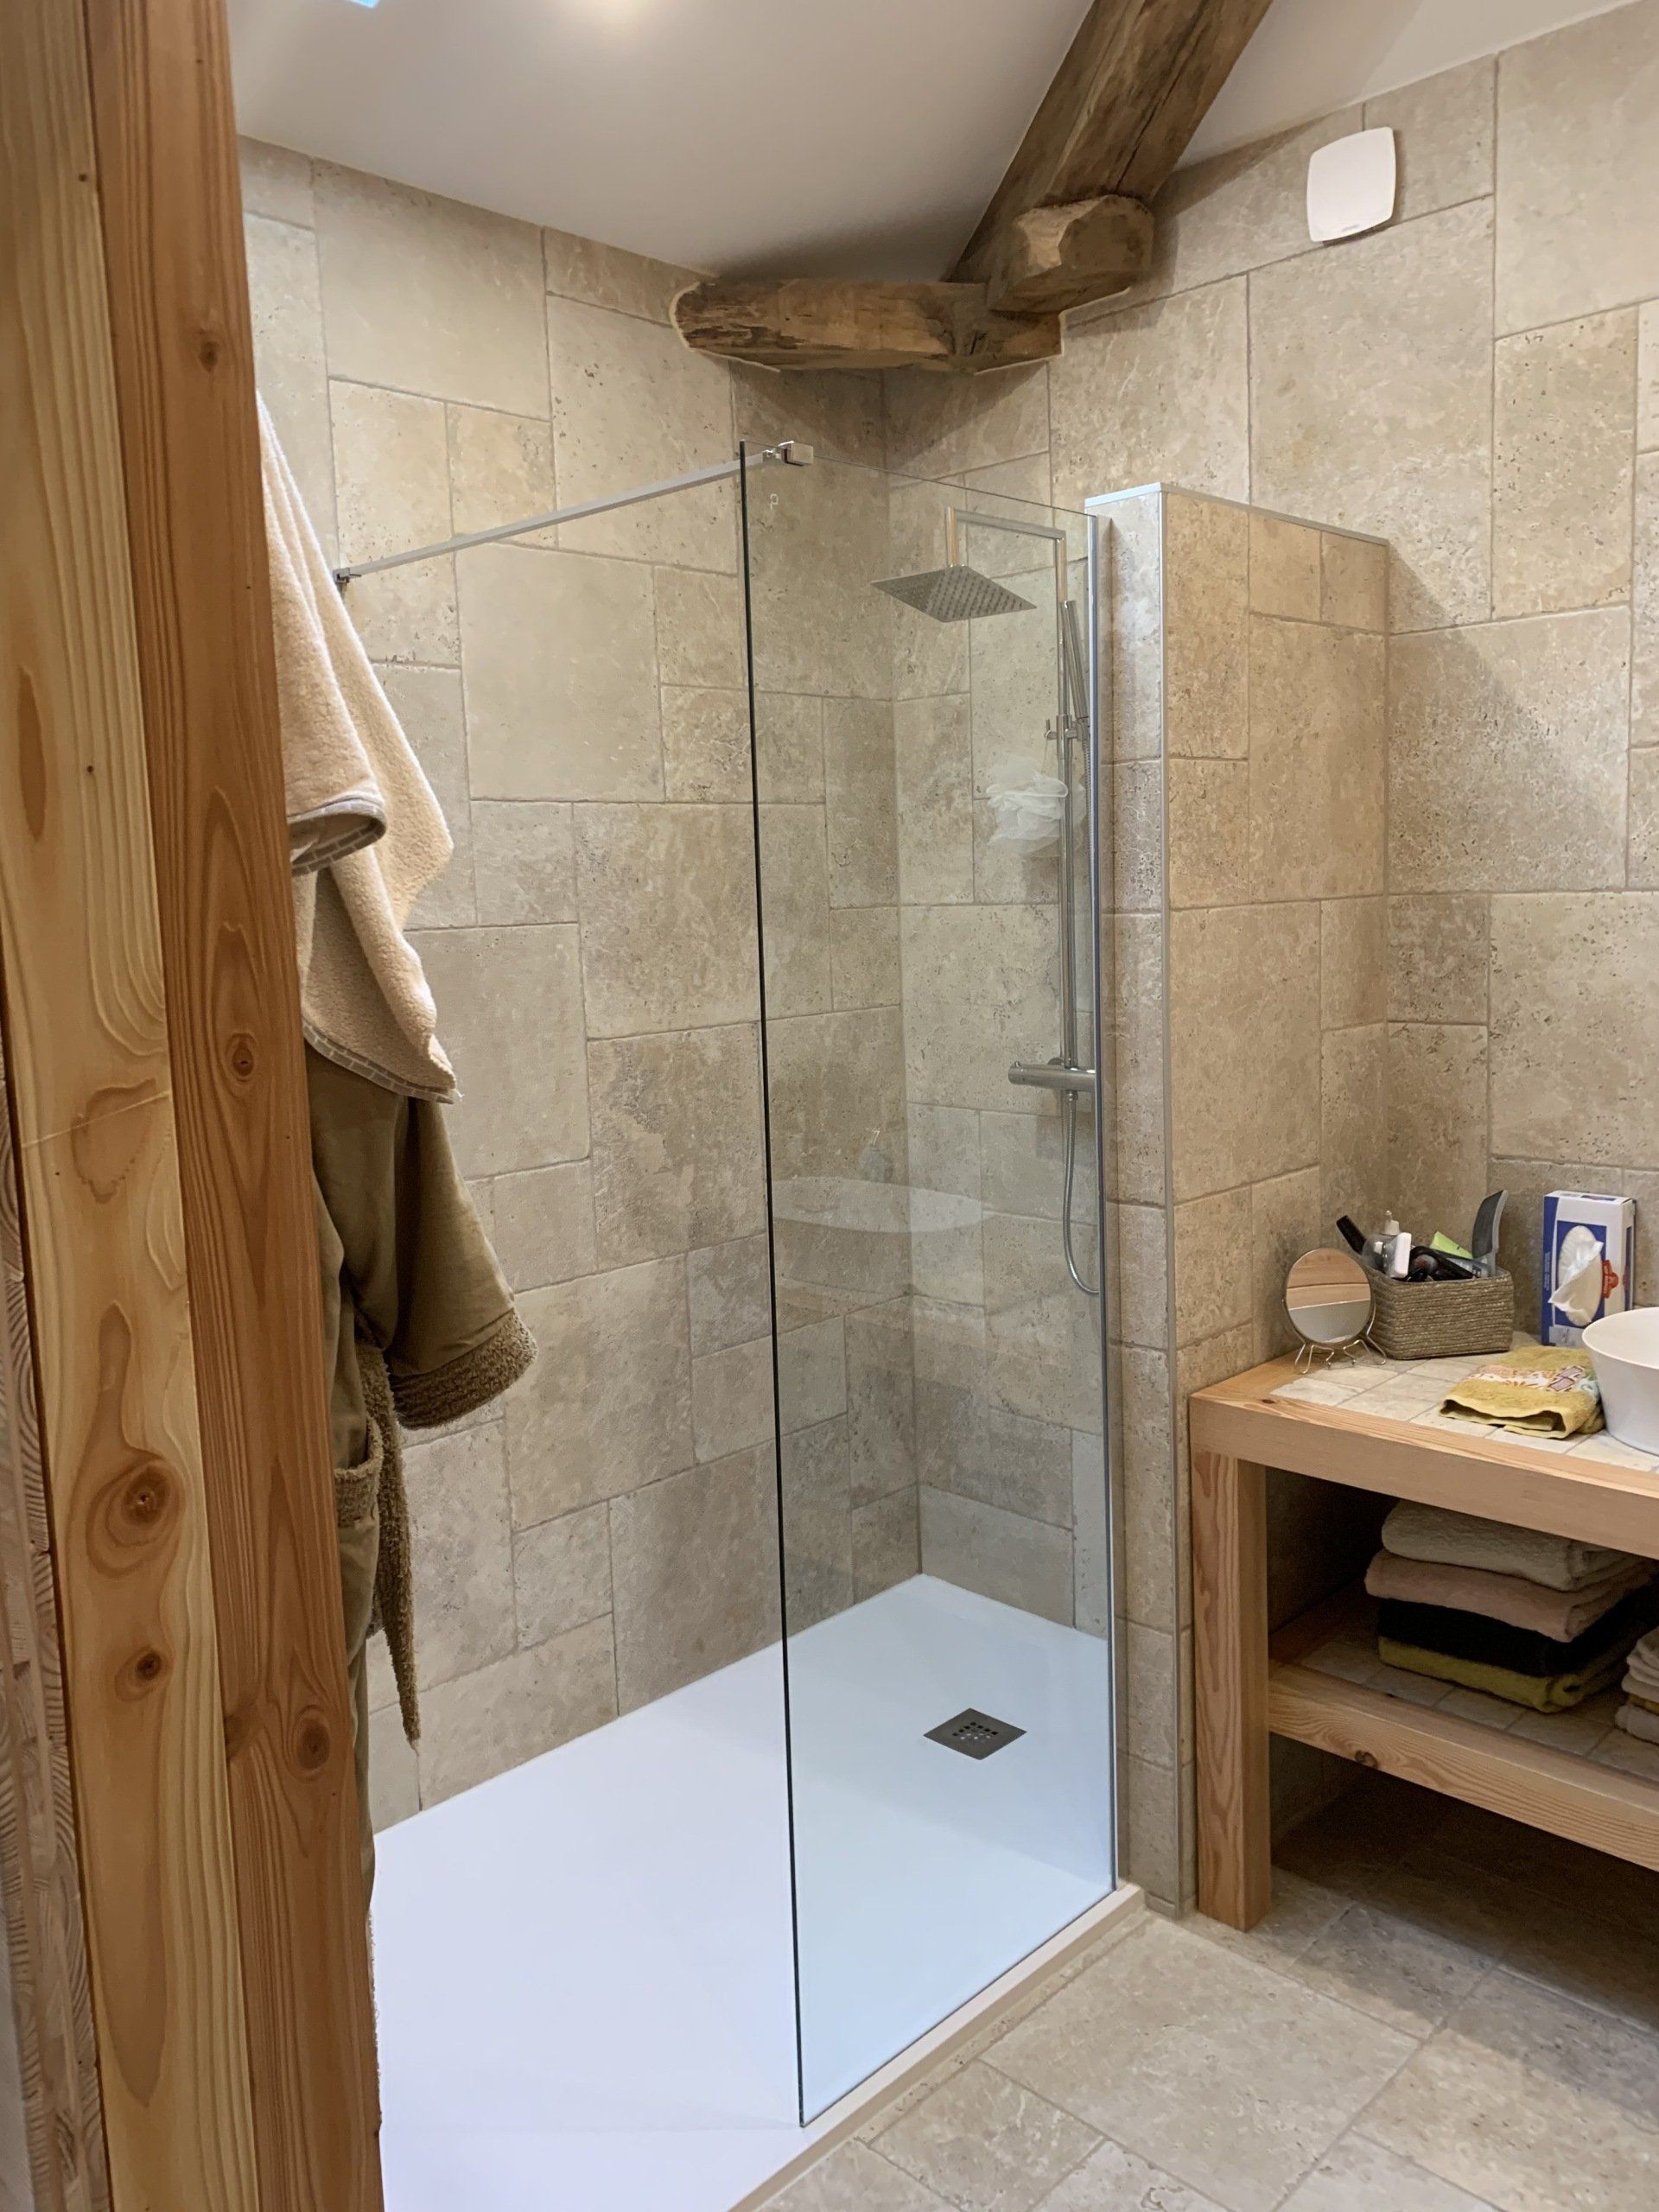 Salle de bains dans une maison en bois